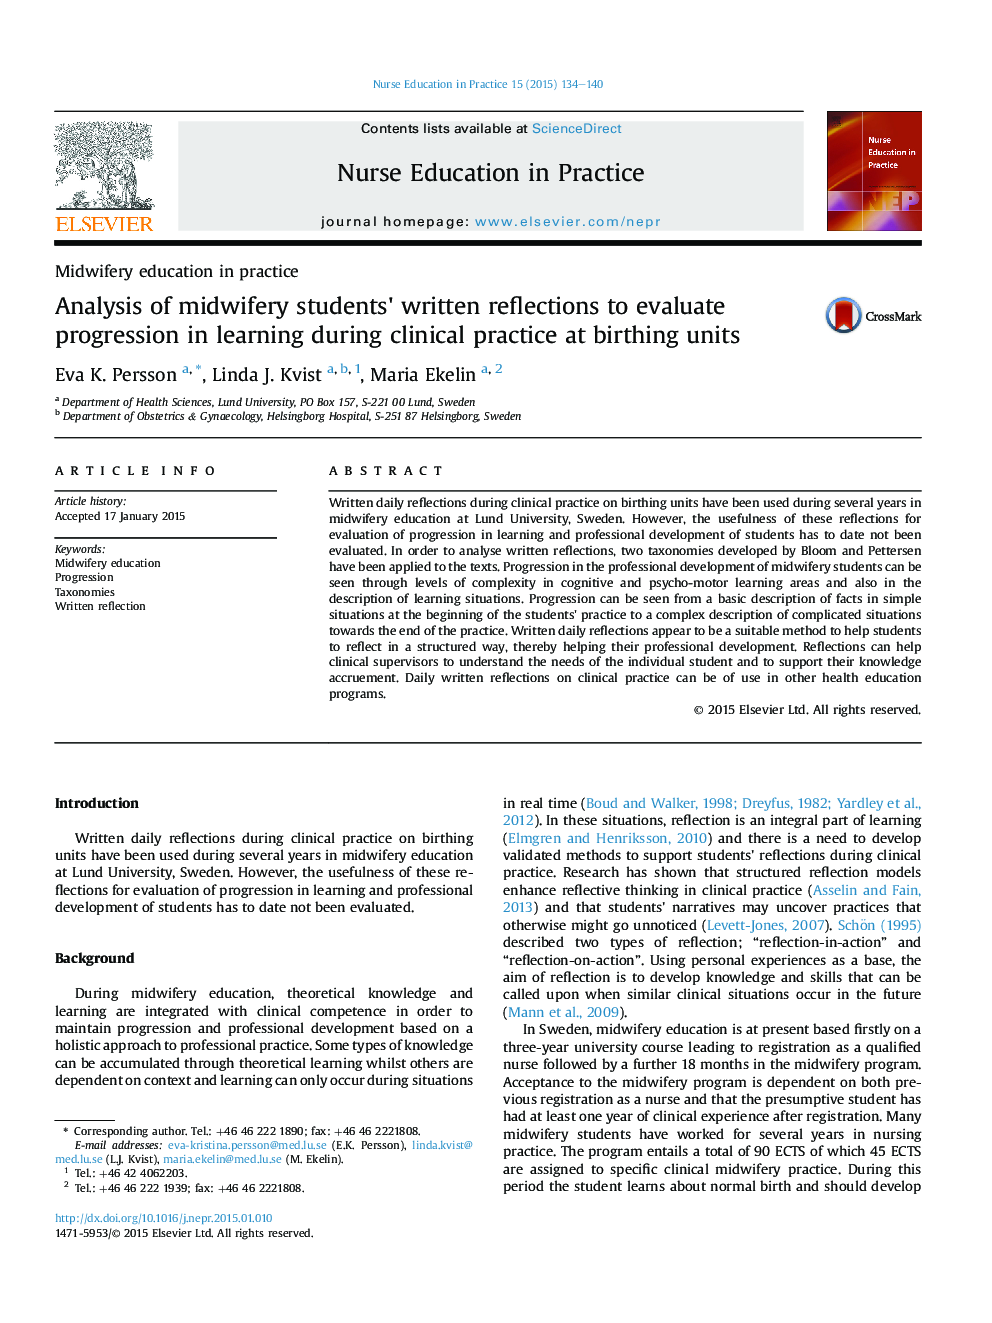 تجزیه و تحلیل بازتاب نوشته شده دانشجویان مامایی به ارزیابی پیشرفت در یادگیری در طول عمل بالینی در واحد تولد